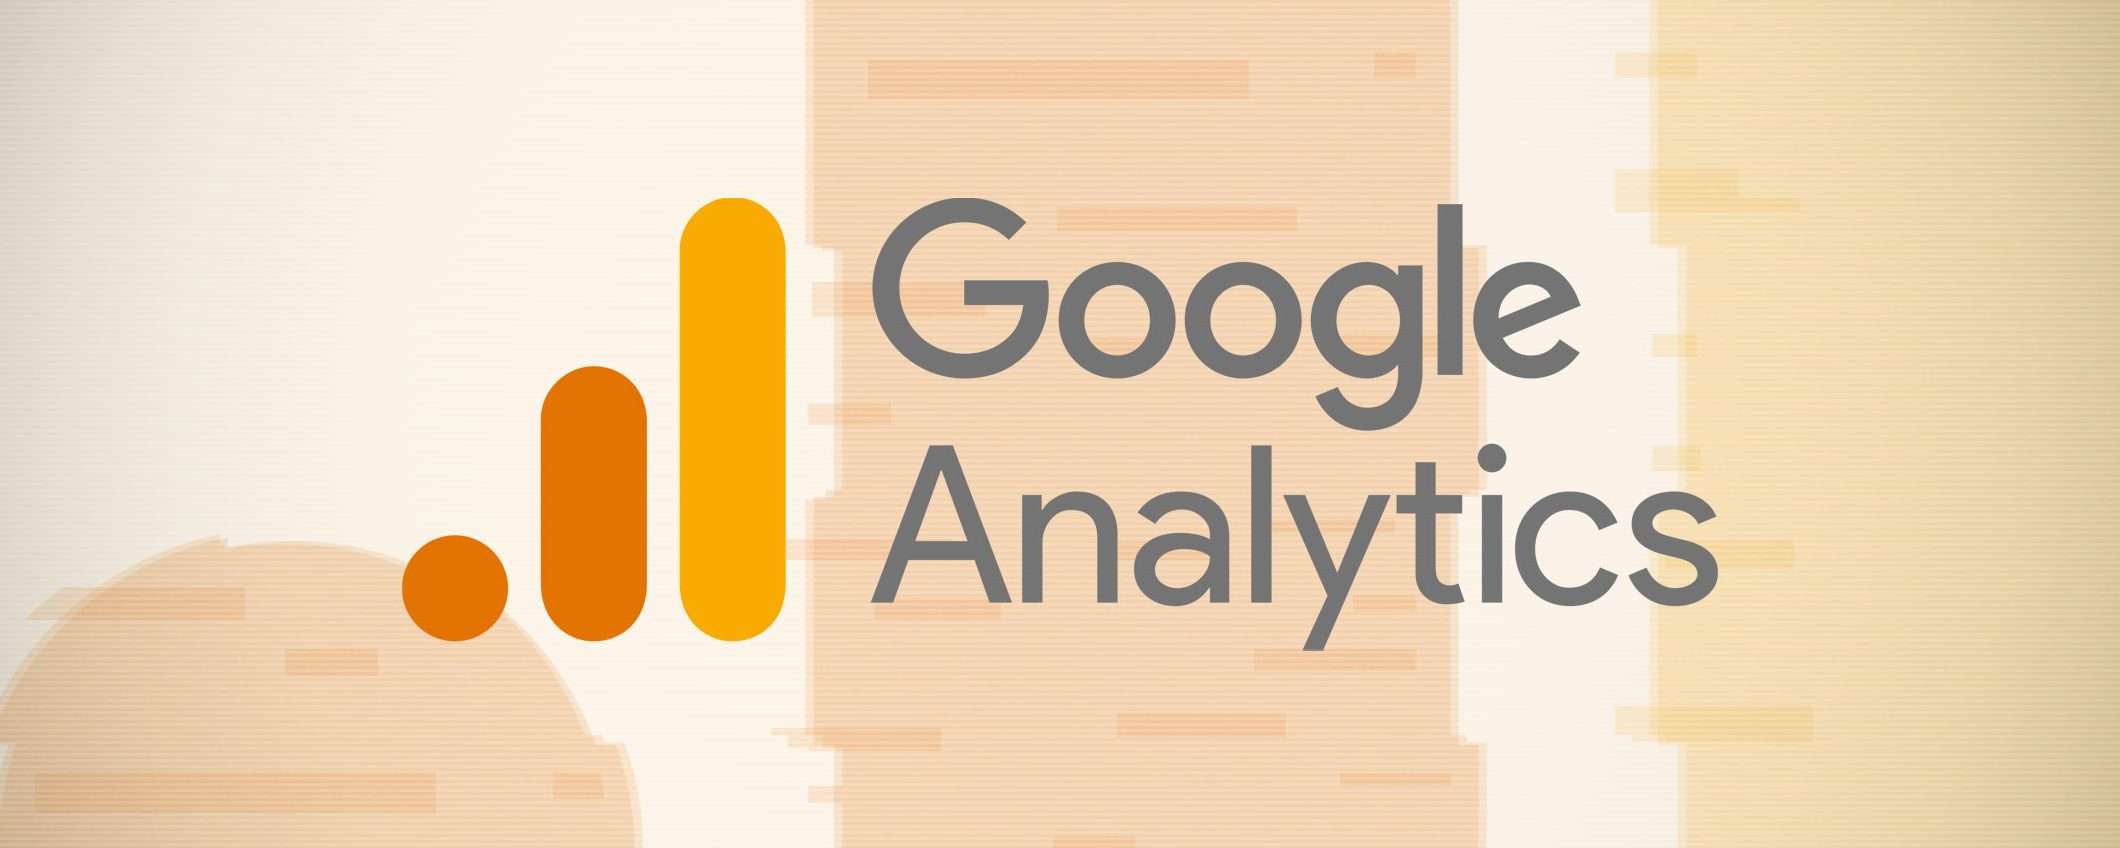 Google Analytics: c'è un problema con il real time